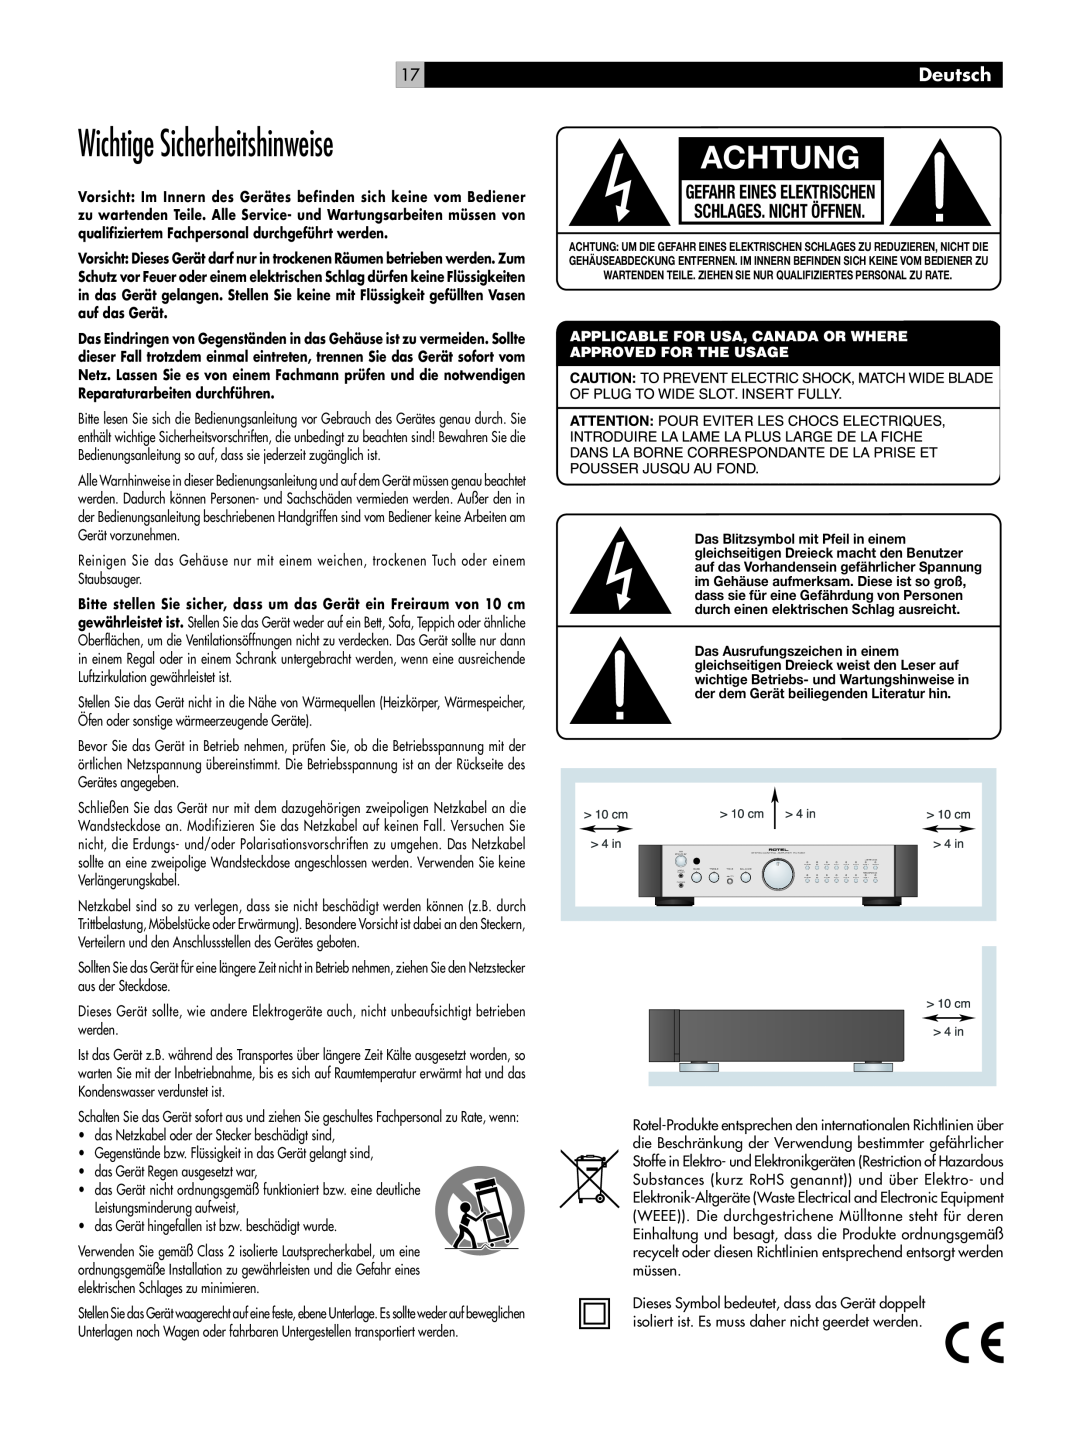 Rotel RC-1082 owner manual Wichtige Sicherheitshinweise, Achtung, Gefahr Eines Elektrischen Schlages. Nicht Öffnen, Deutsch 